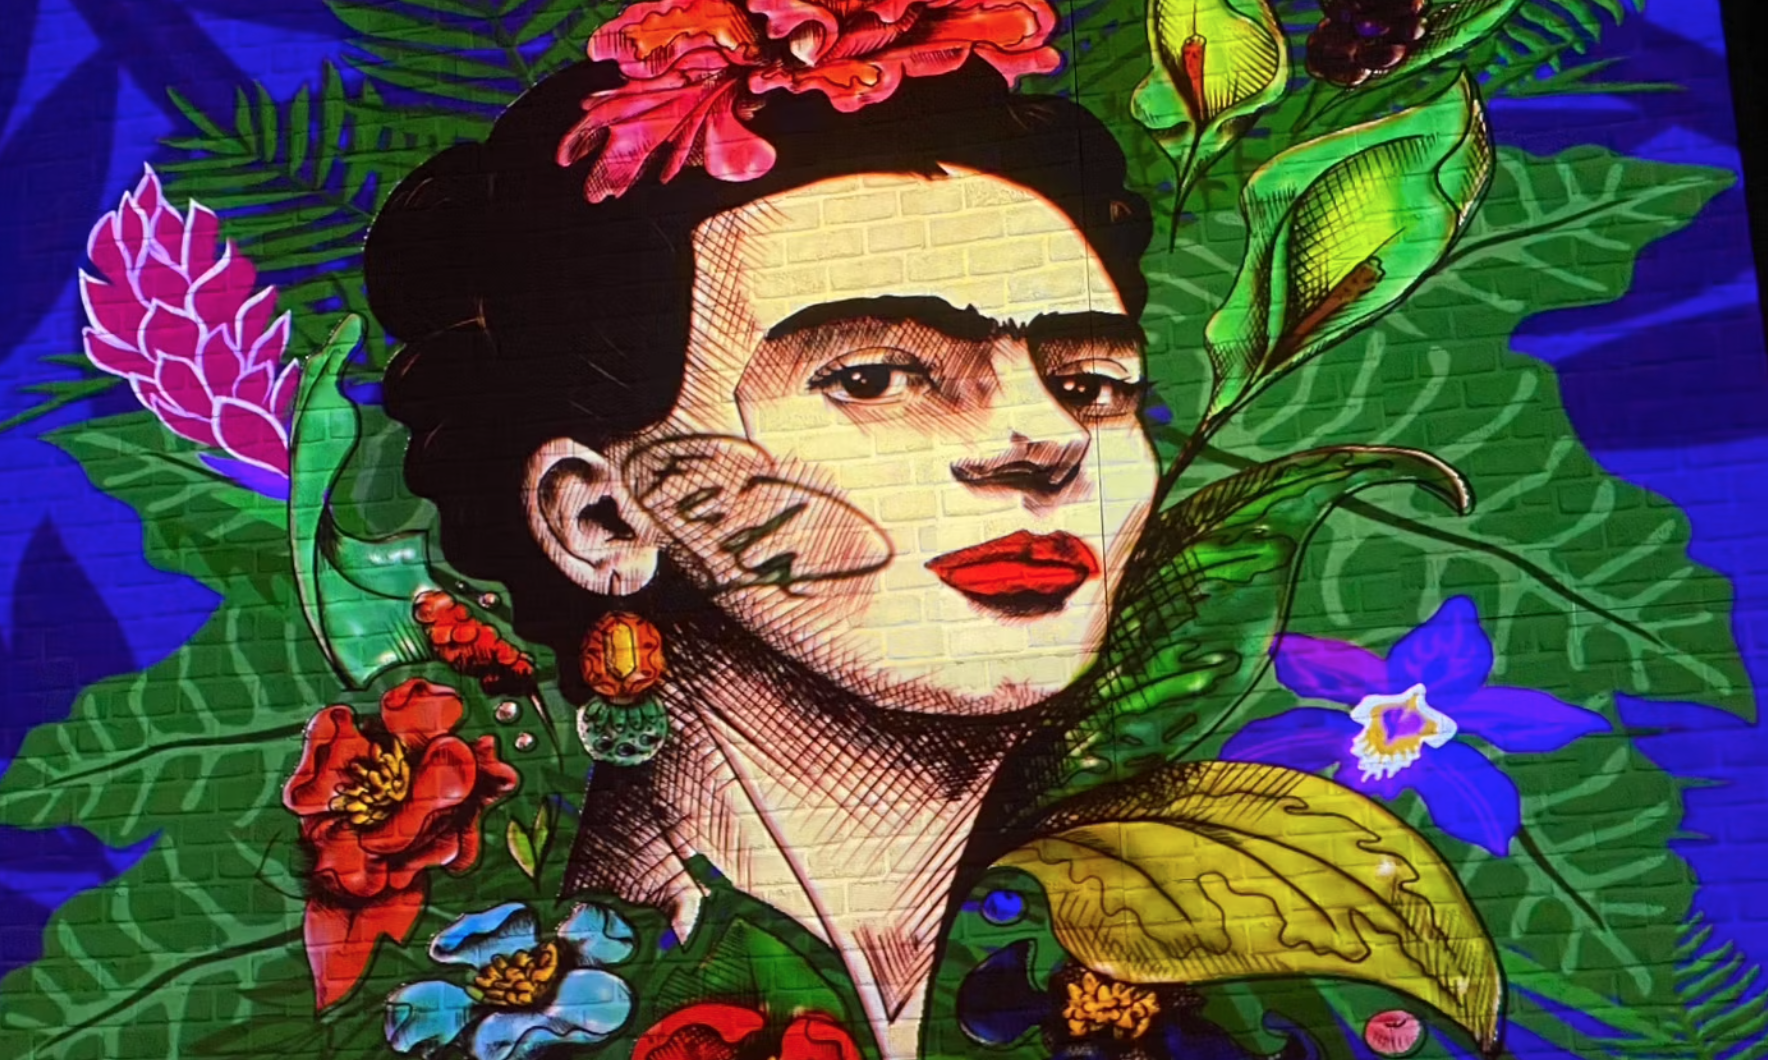 Frida Kahlo 沉浸式传记展于布鲁克林举办